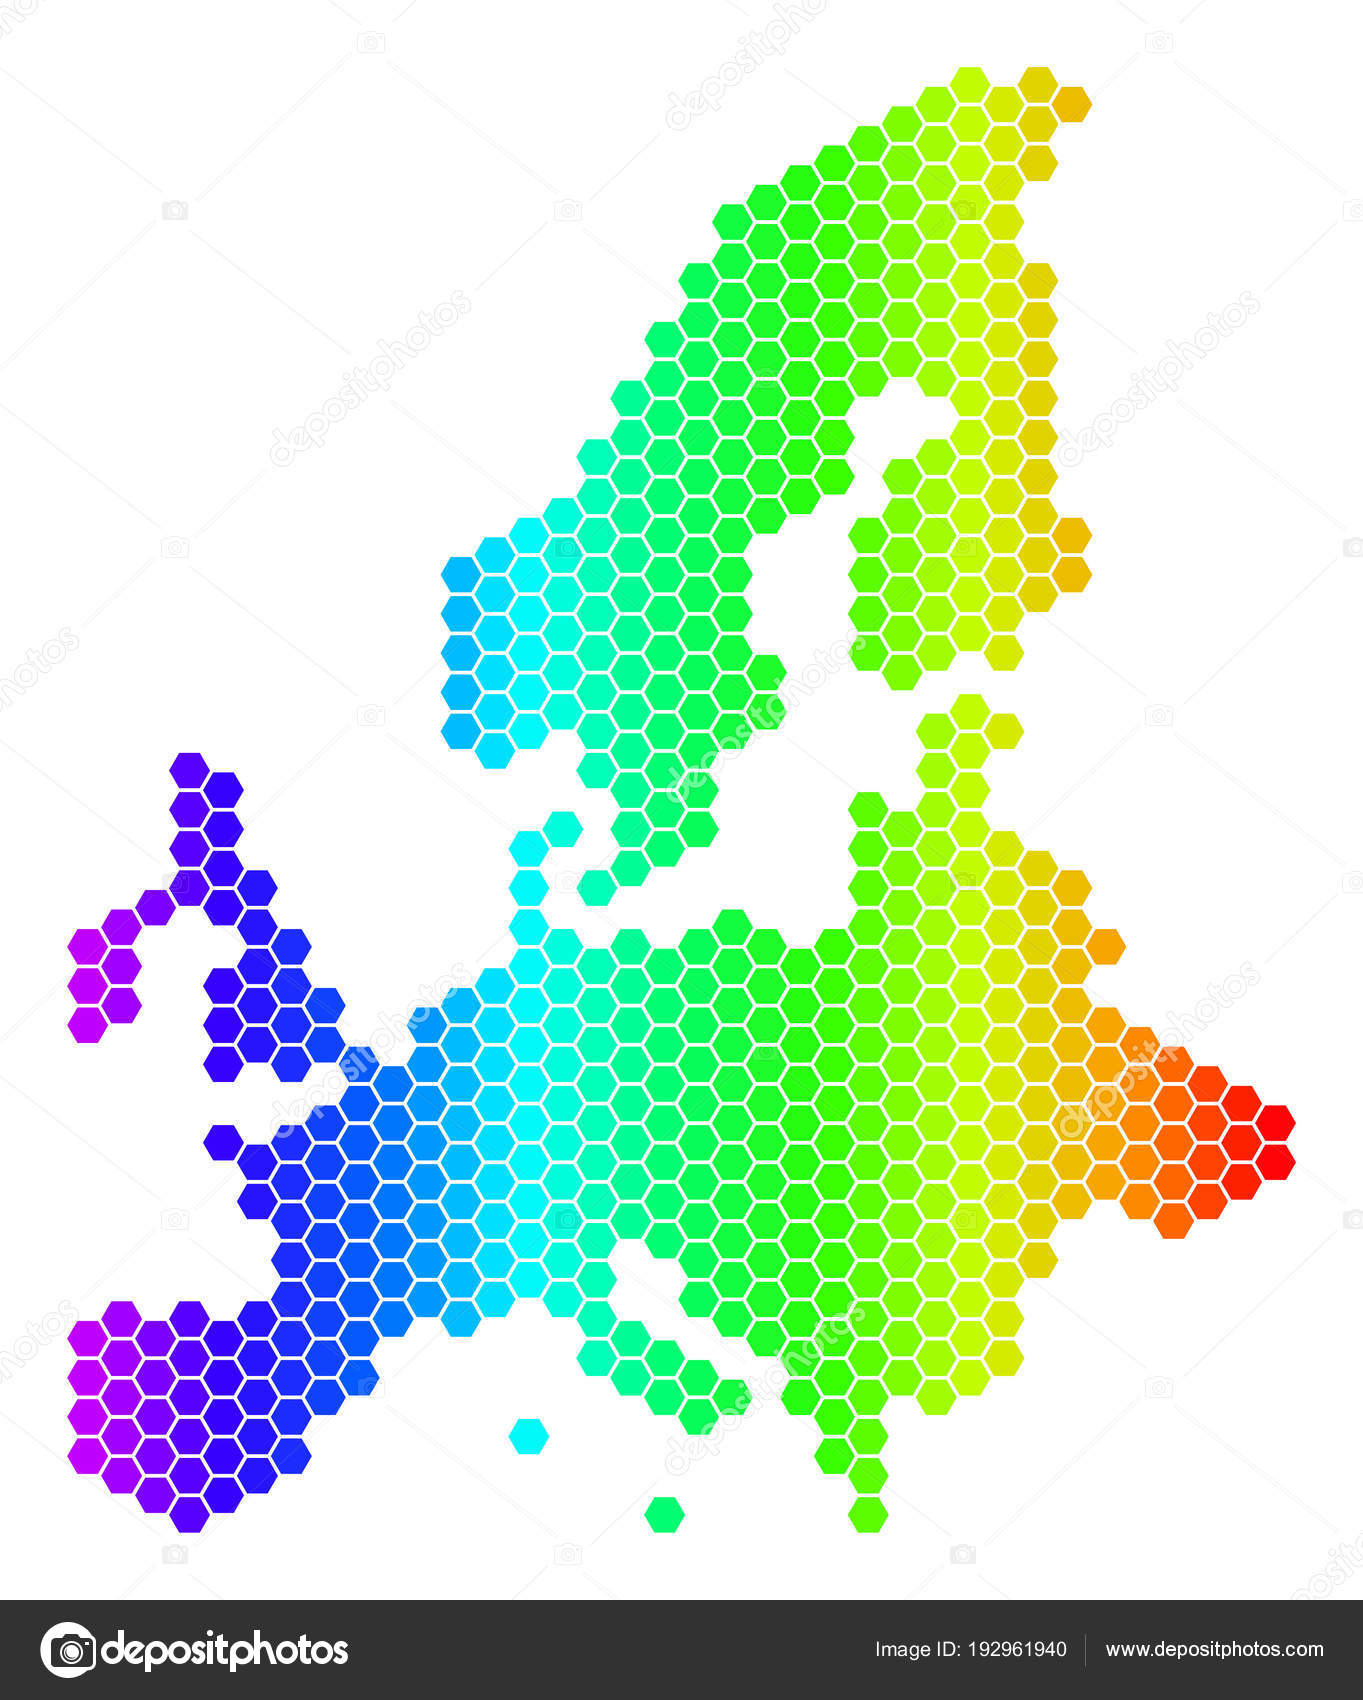 Carte De Lunion Européenne Du Spectre Hexagone Image